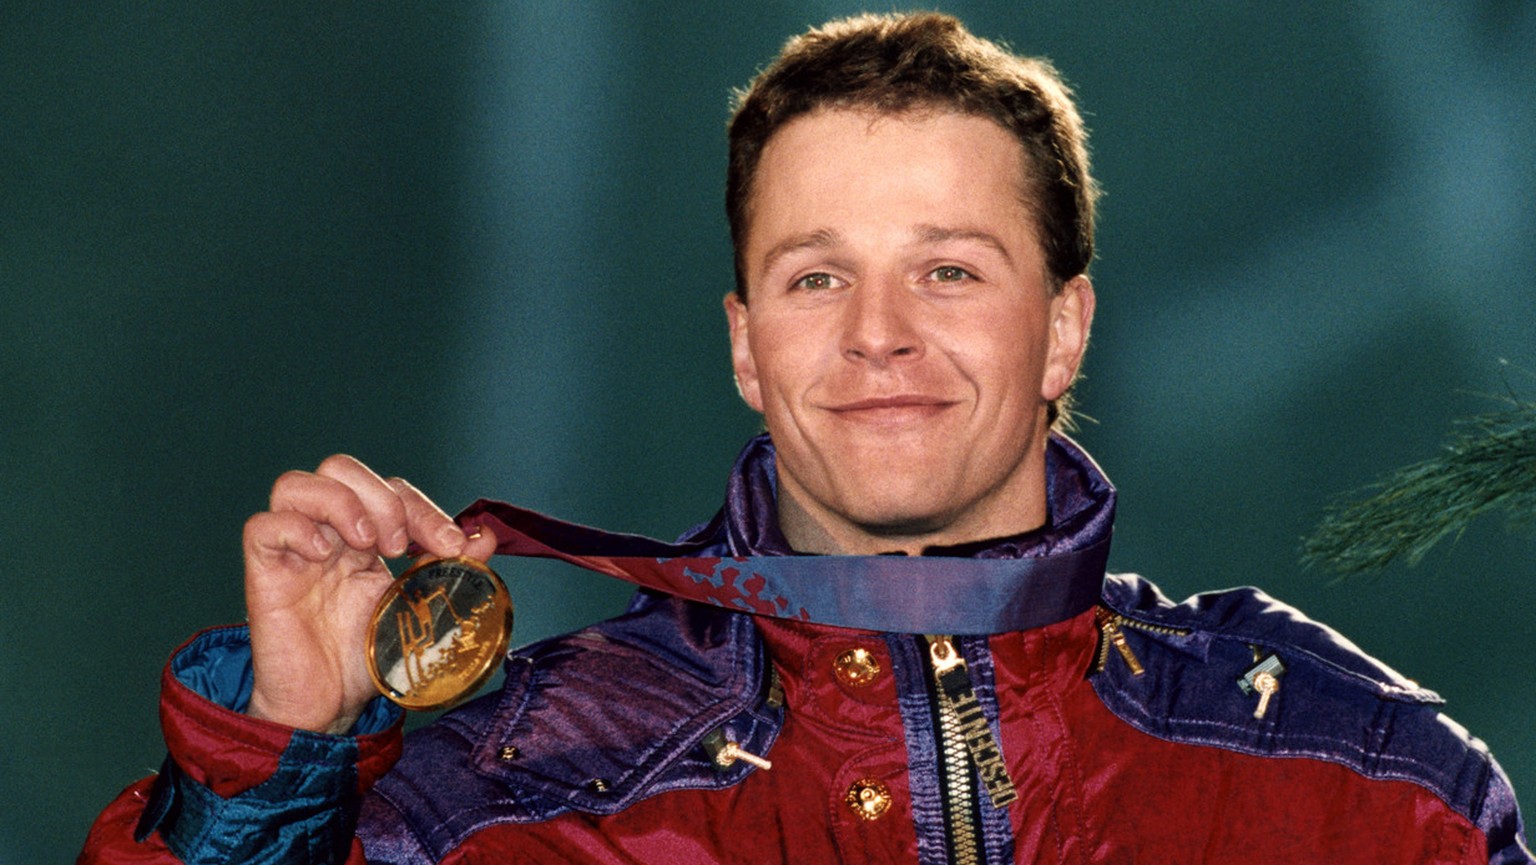 Stolz praesentiert der Schweizer Andreas &quot;Sonny&quot; Schoenbaechler seine Goldmedaille im Sprungwettbewerb der Skiakrobaten, aufgenommen am 24. Februar 1994 waehrend der Siegerehrung an den Olym ...